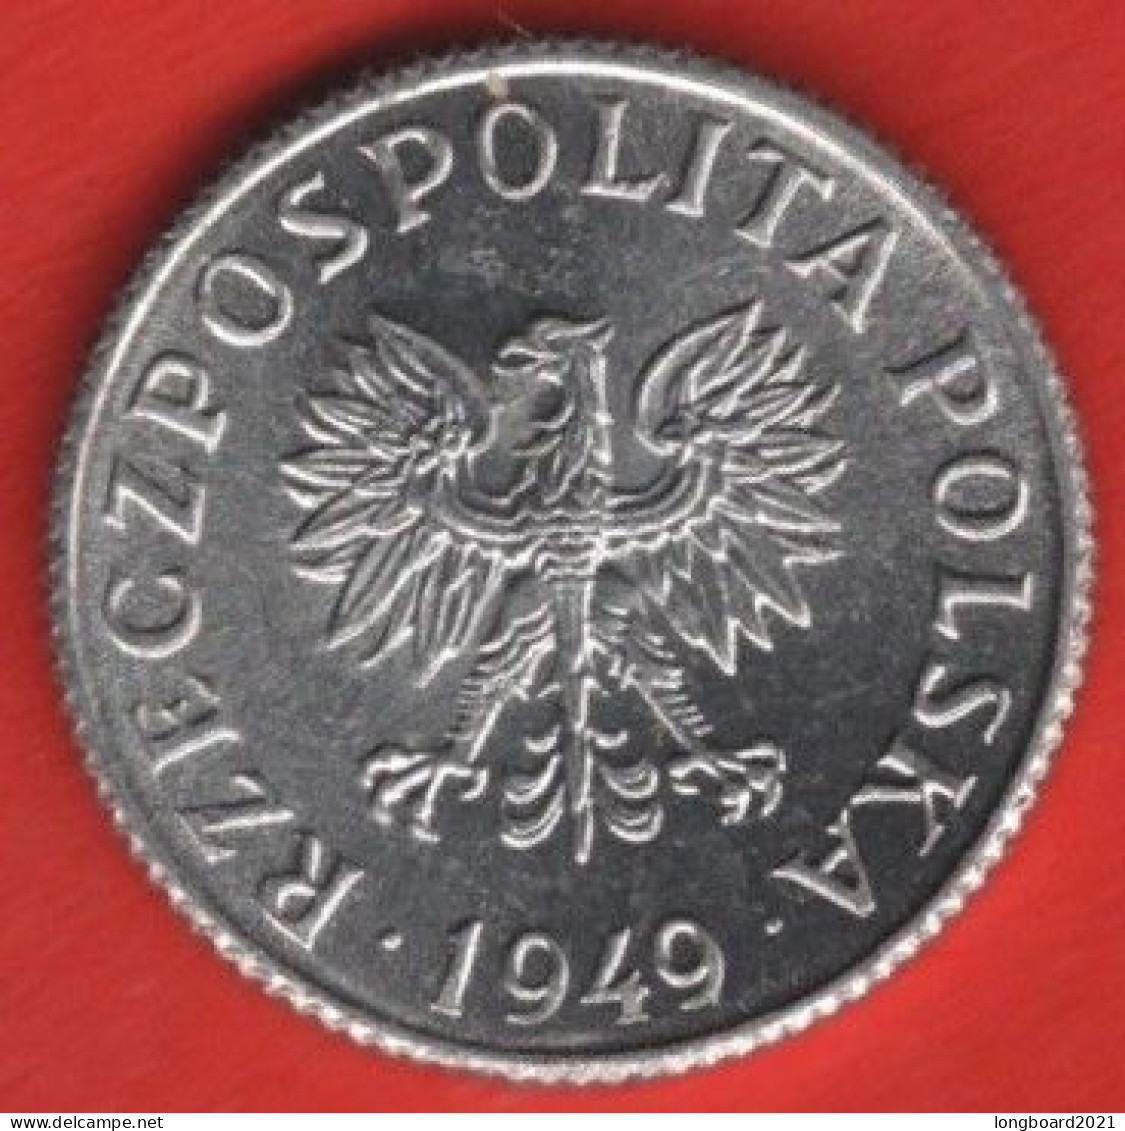 POLAND - 1 GROSZ 1949 - Pologne